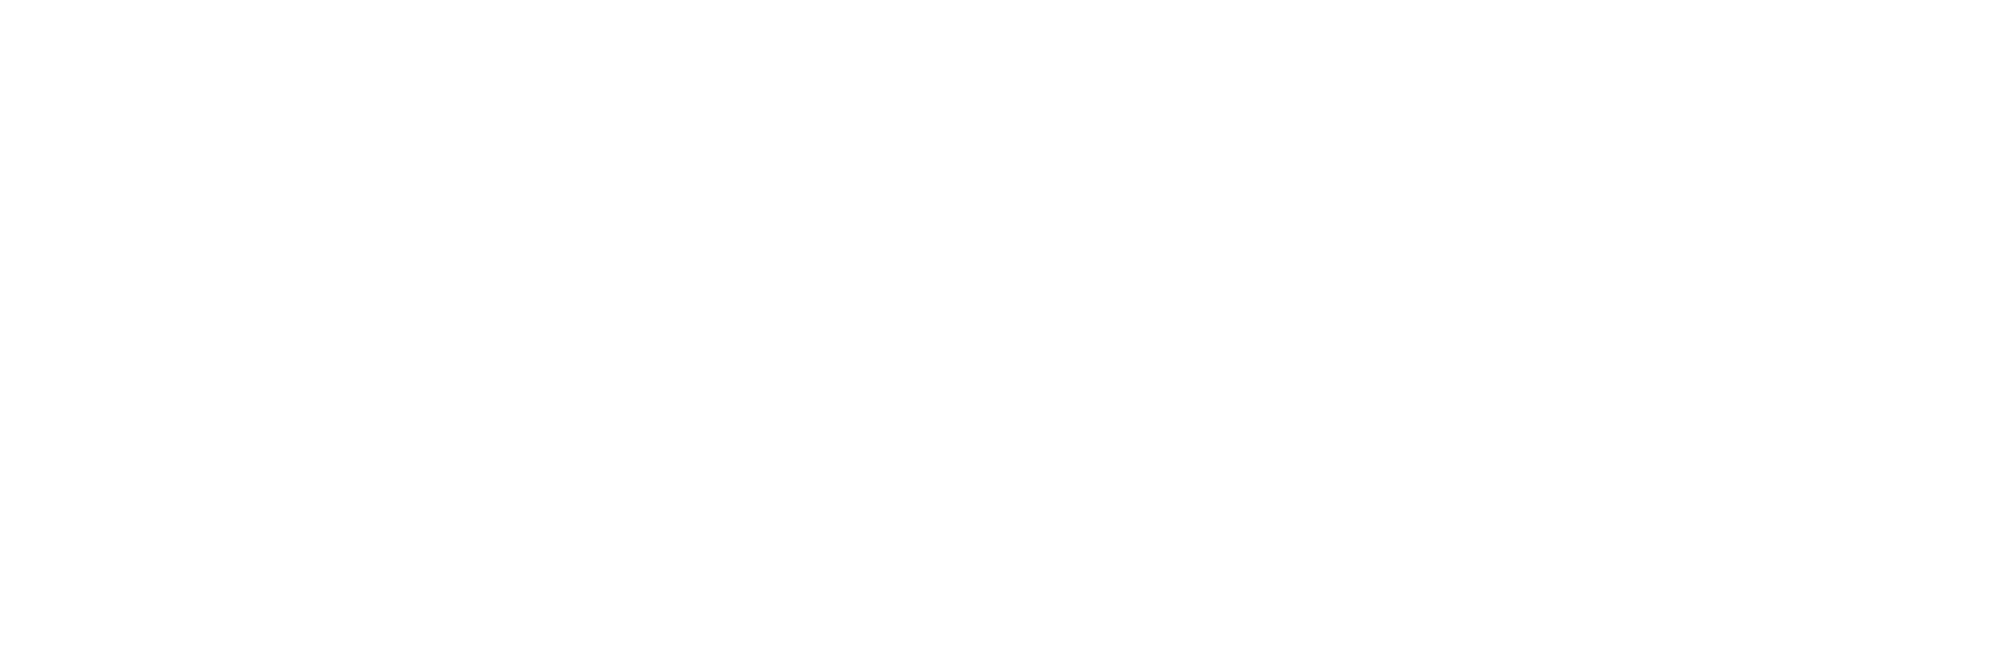 Marriott_Weißgrau